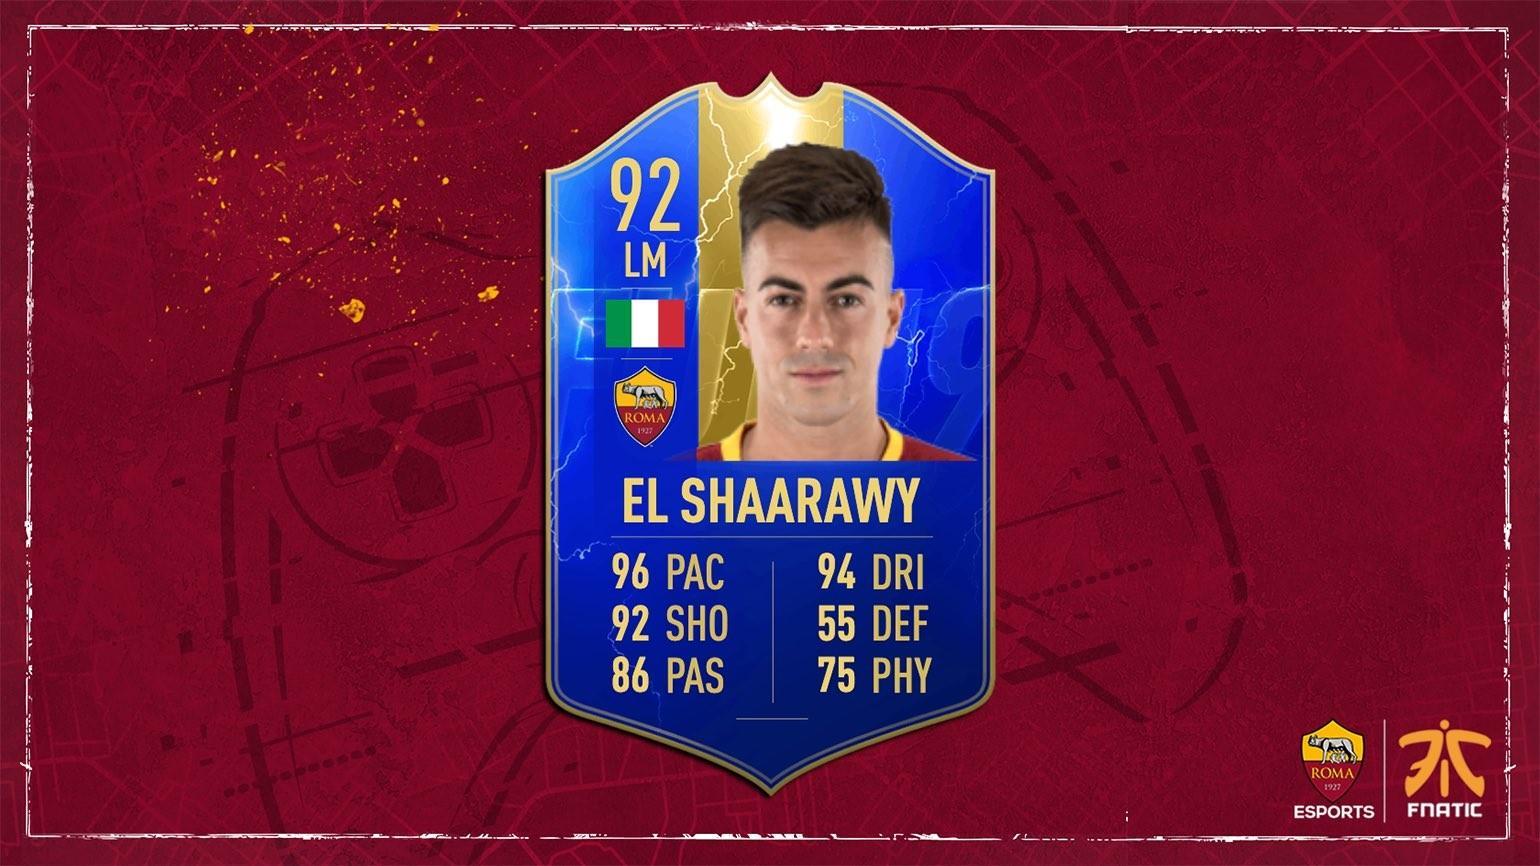 La carta di El Shaarawy su Fifa19 